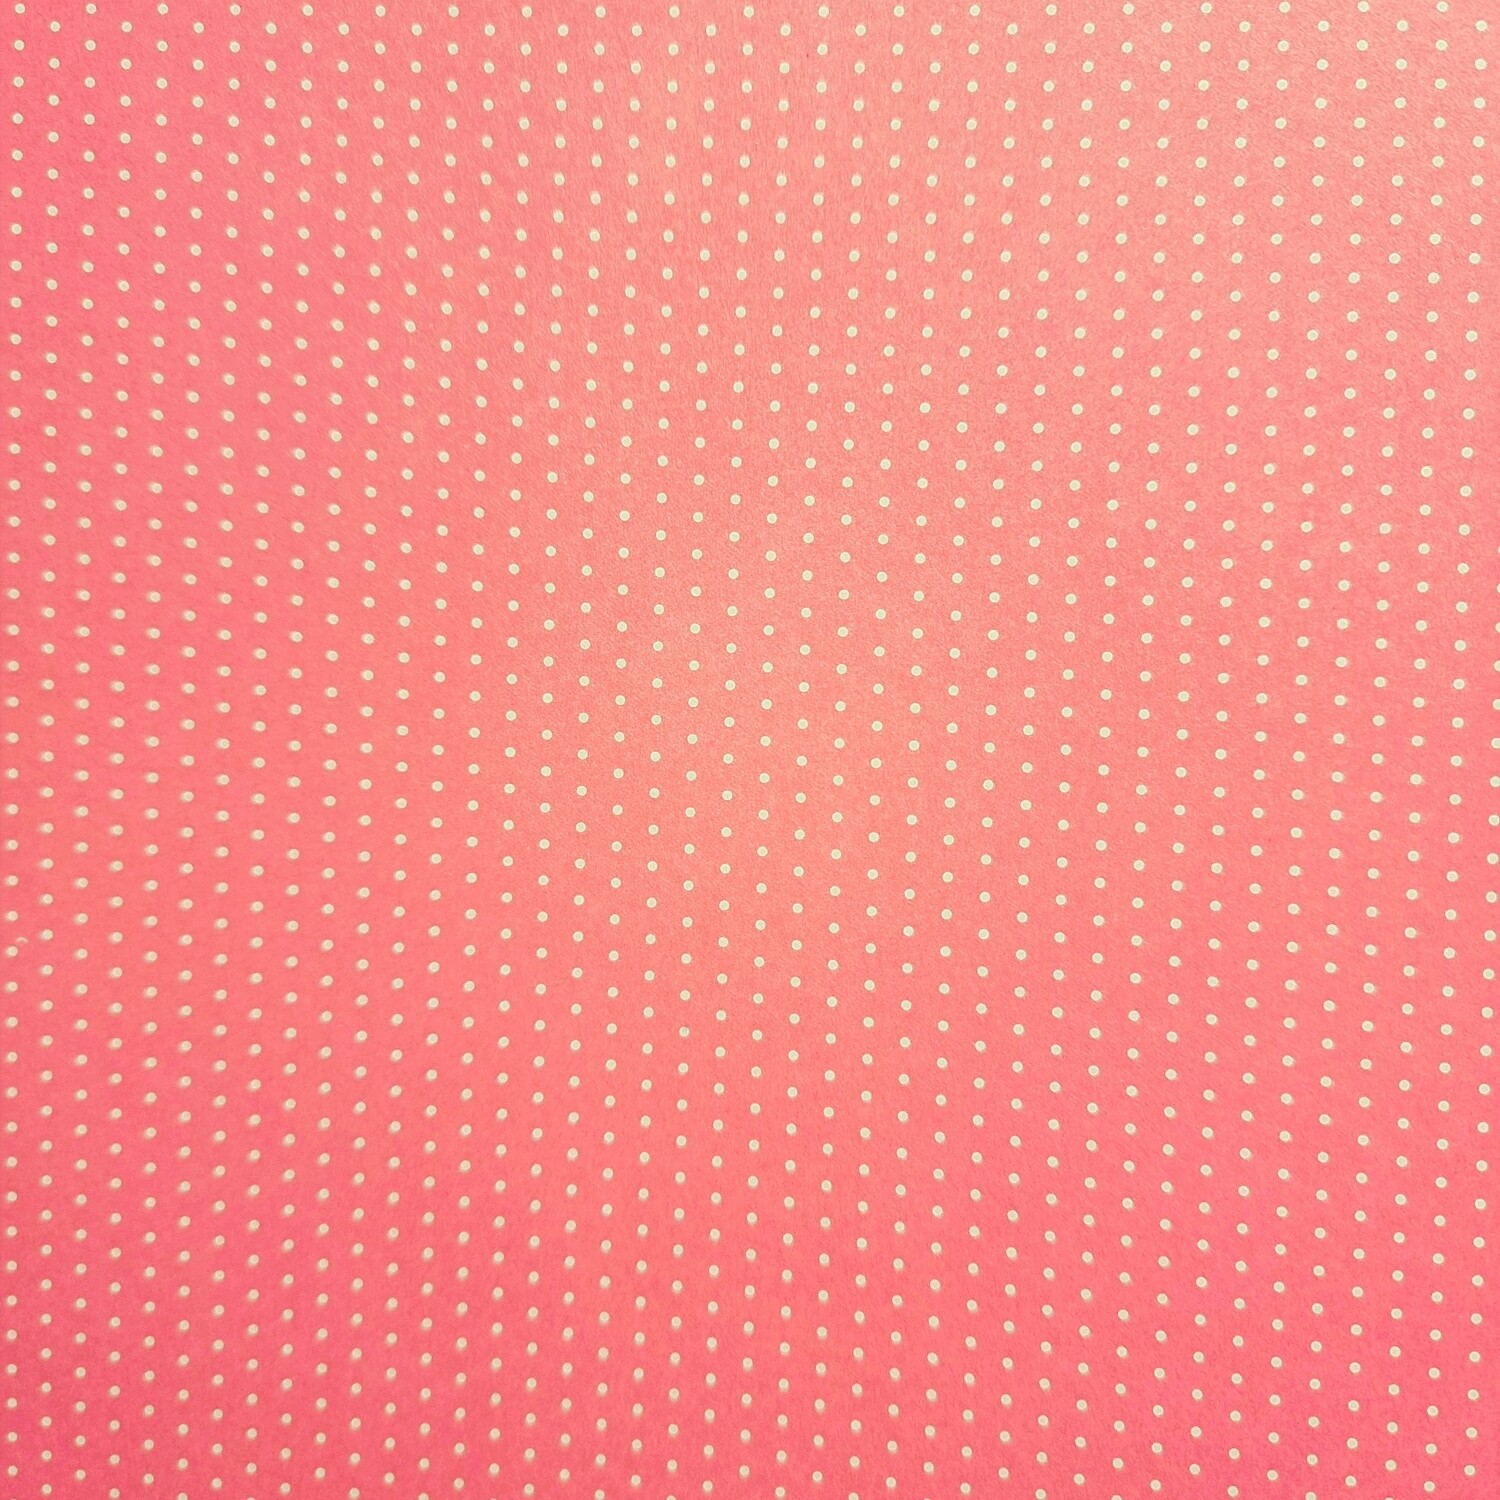 Motivpapier Mini Punkte rosa mit weißen Punkten